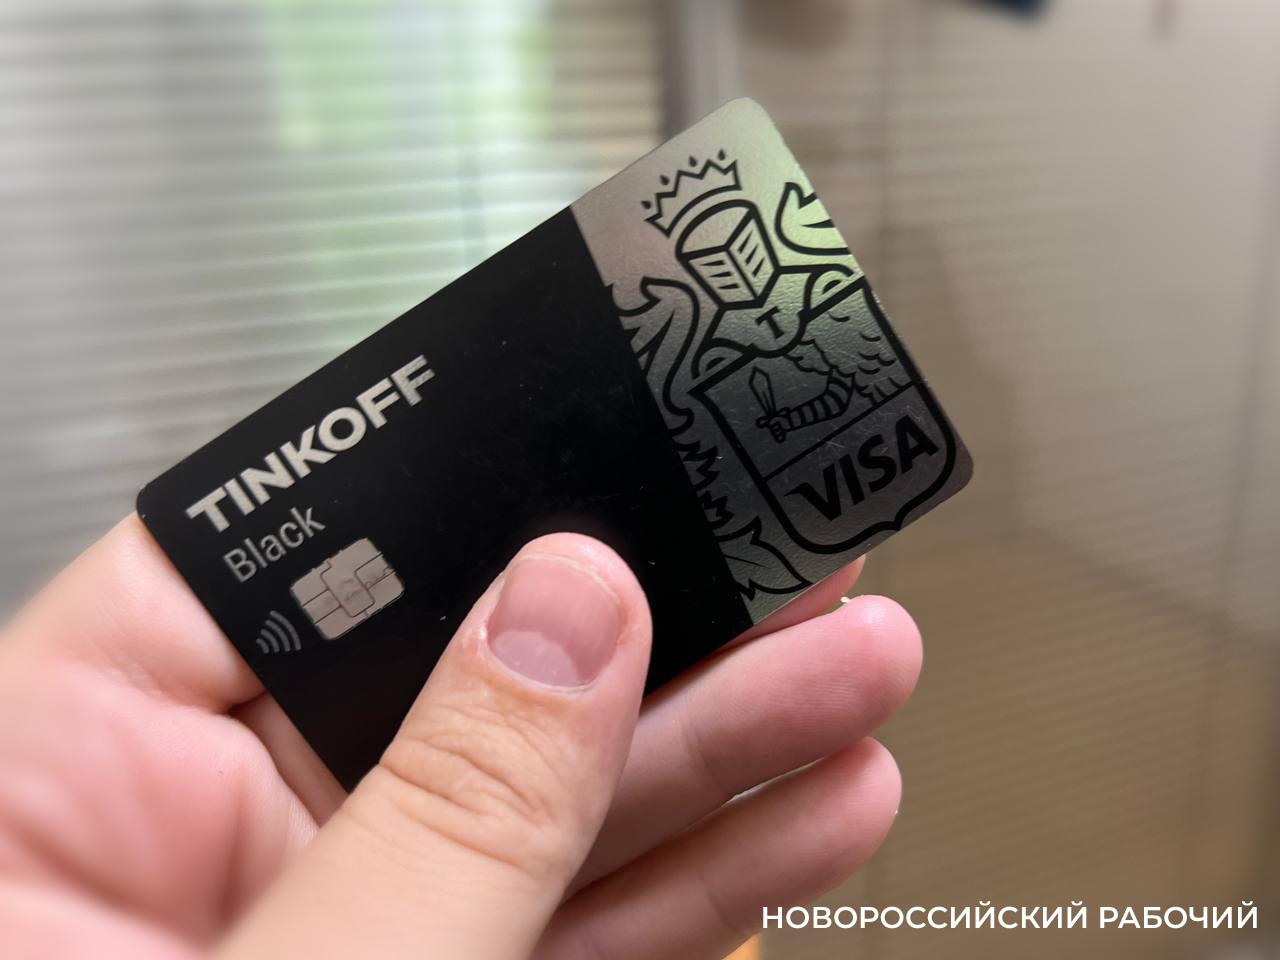 Не вздумайте расплачиваться найденными на улицах Новороссийска банковскими картами! Перспектива — судимость